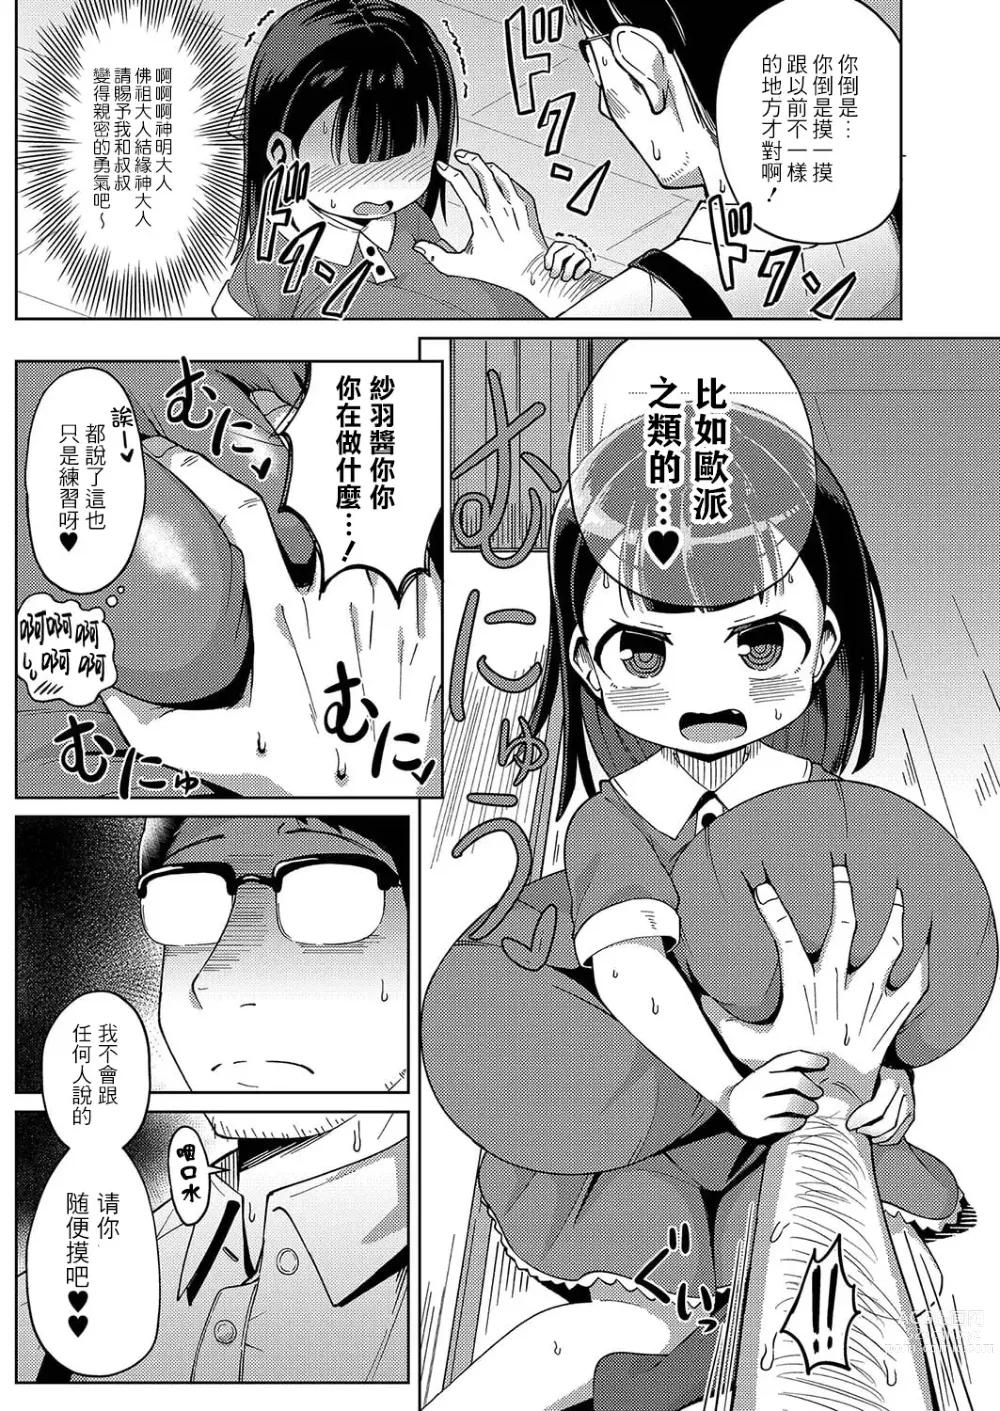 Page 8 of manga Kagura